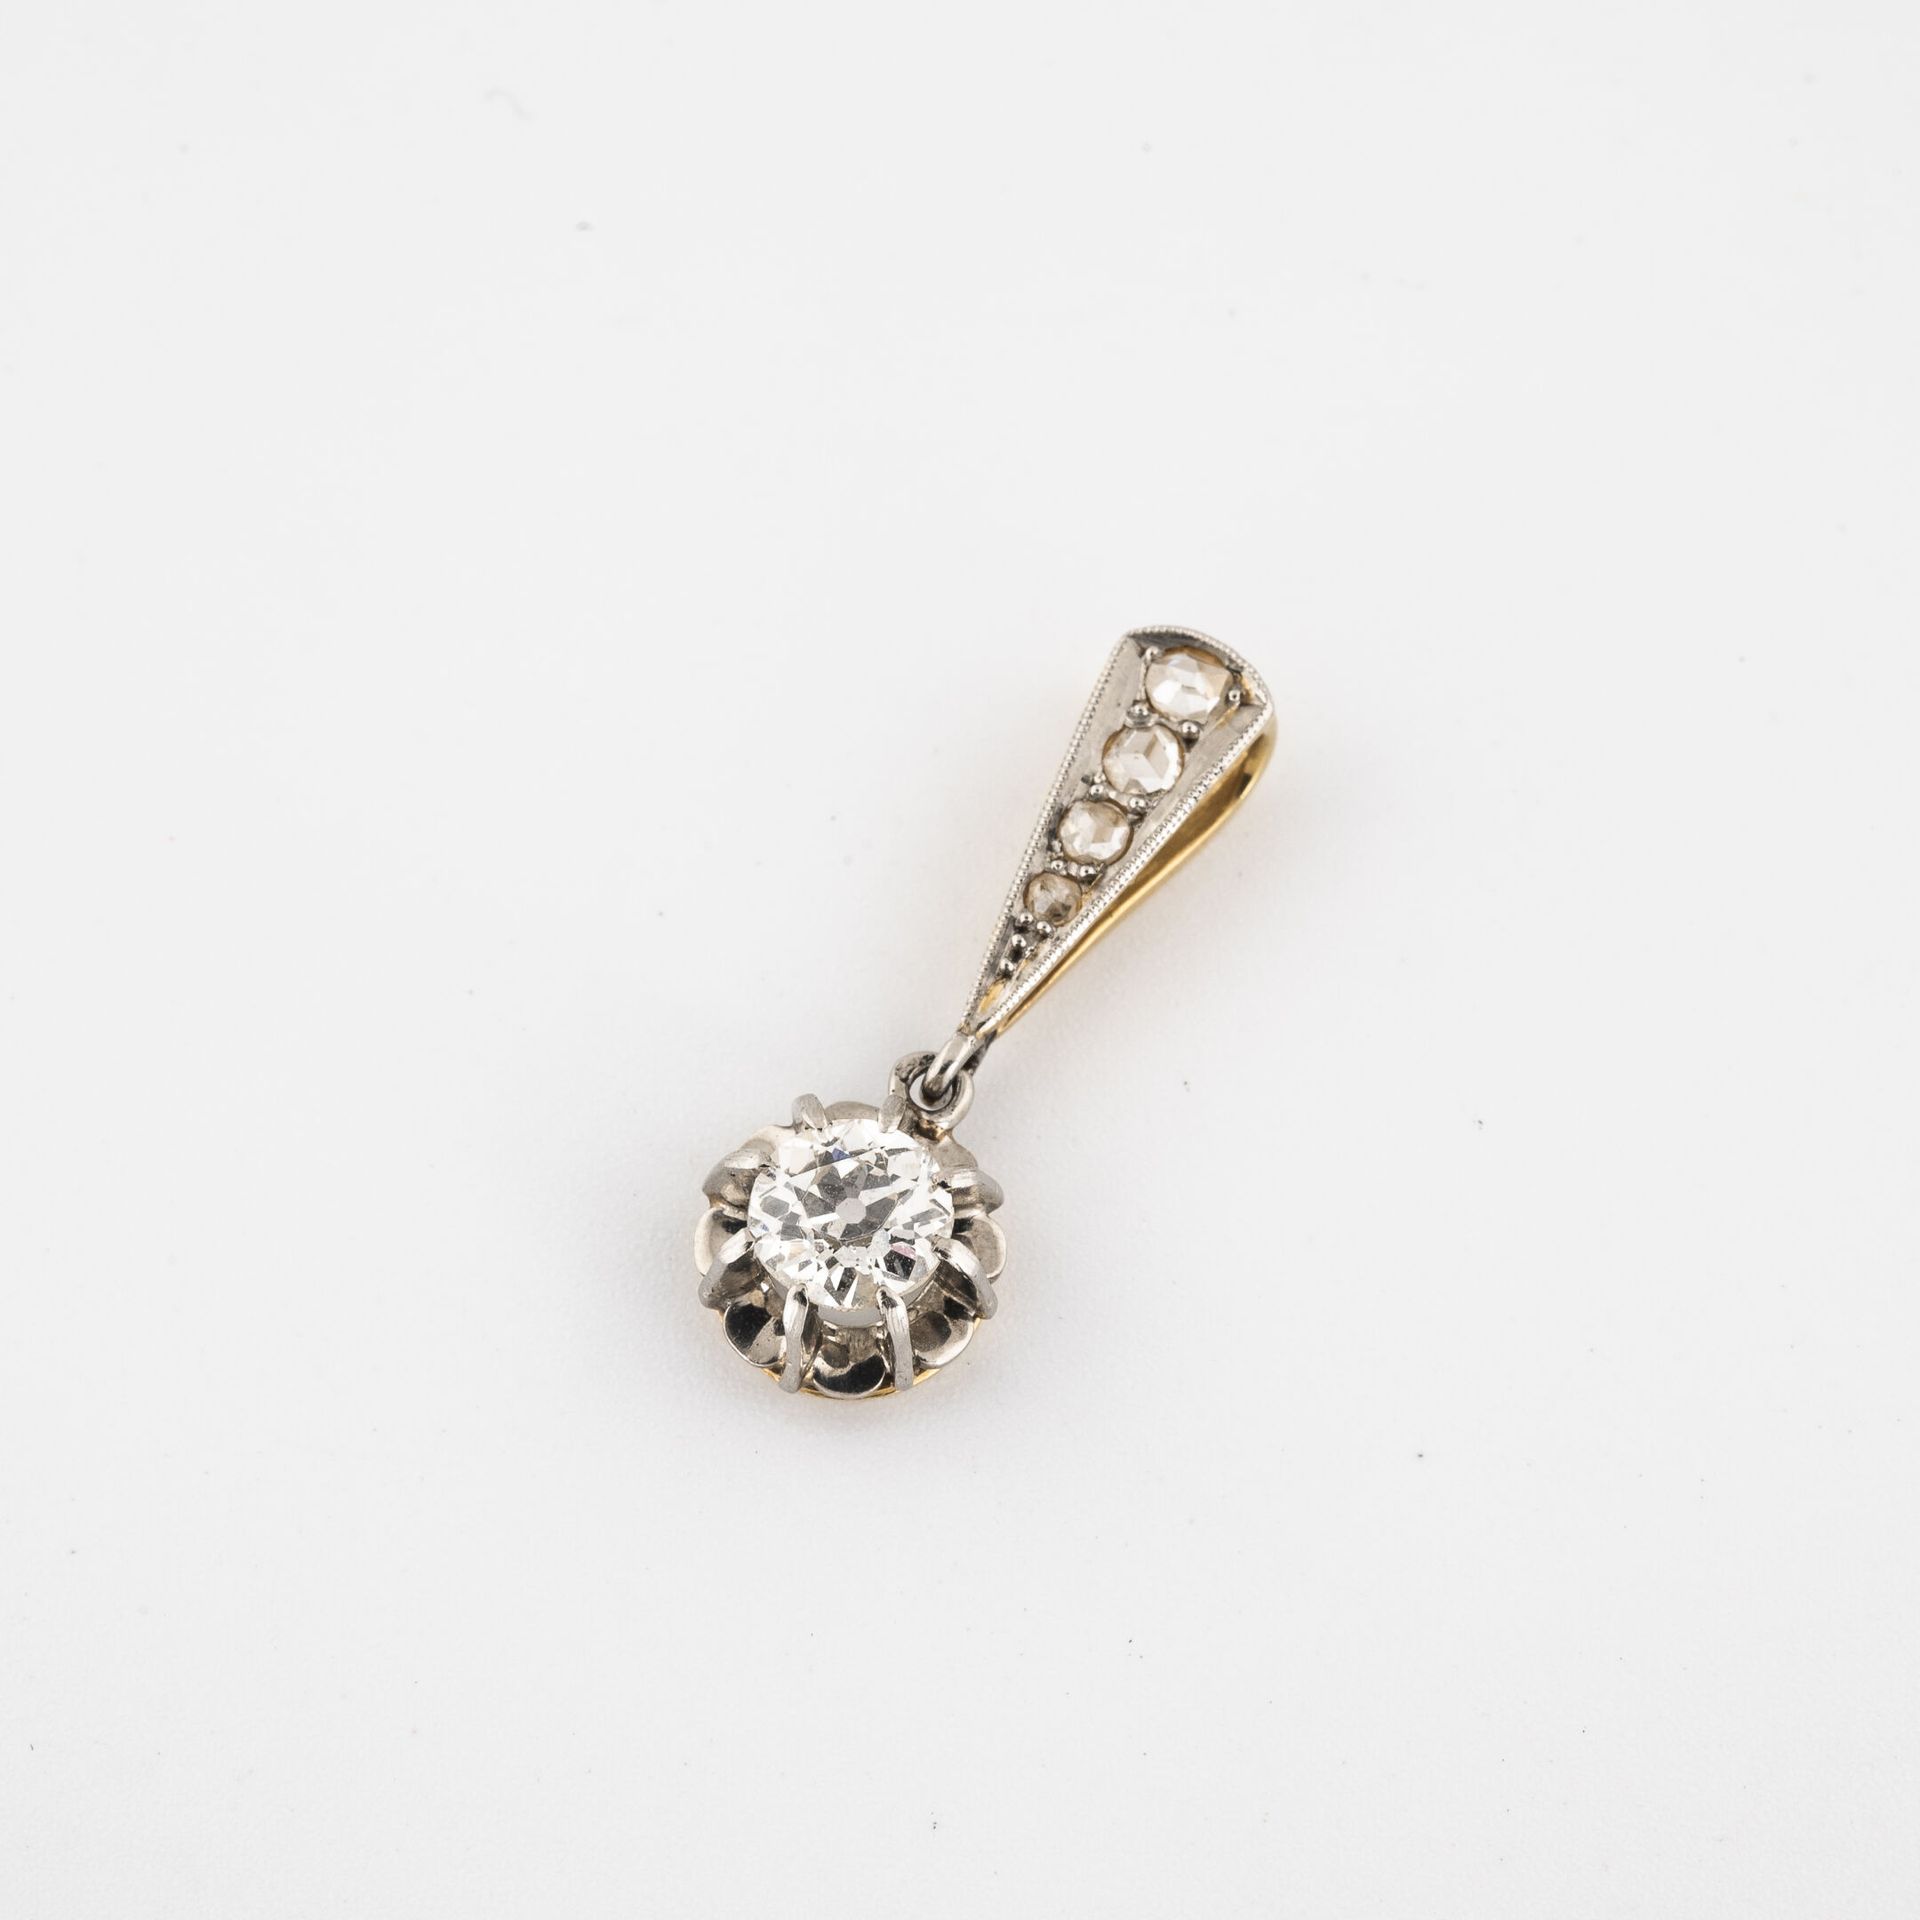 Null 小型黄金和白金（750）吊坠，镶有爪形老式切割钻石。

环状物上镶嵌着玫瑰式切割的钻石，采用种子式镶嵌。

主钻石的大约重量：0.25-0.35克拉。&hellip;